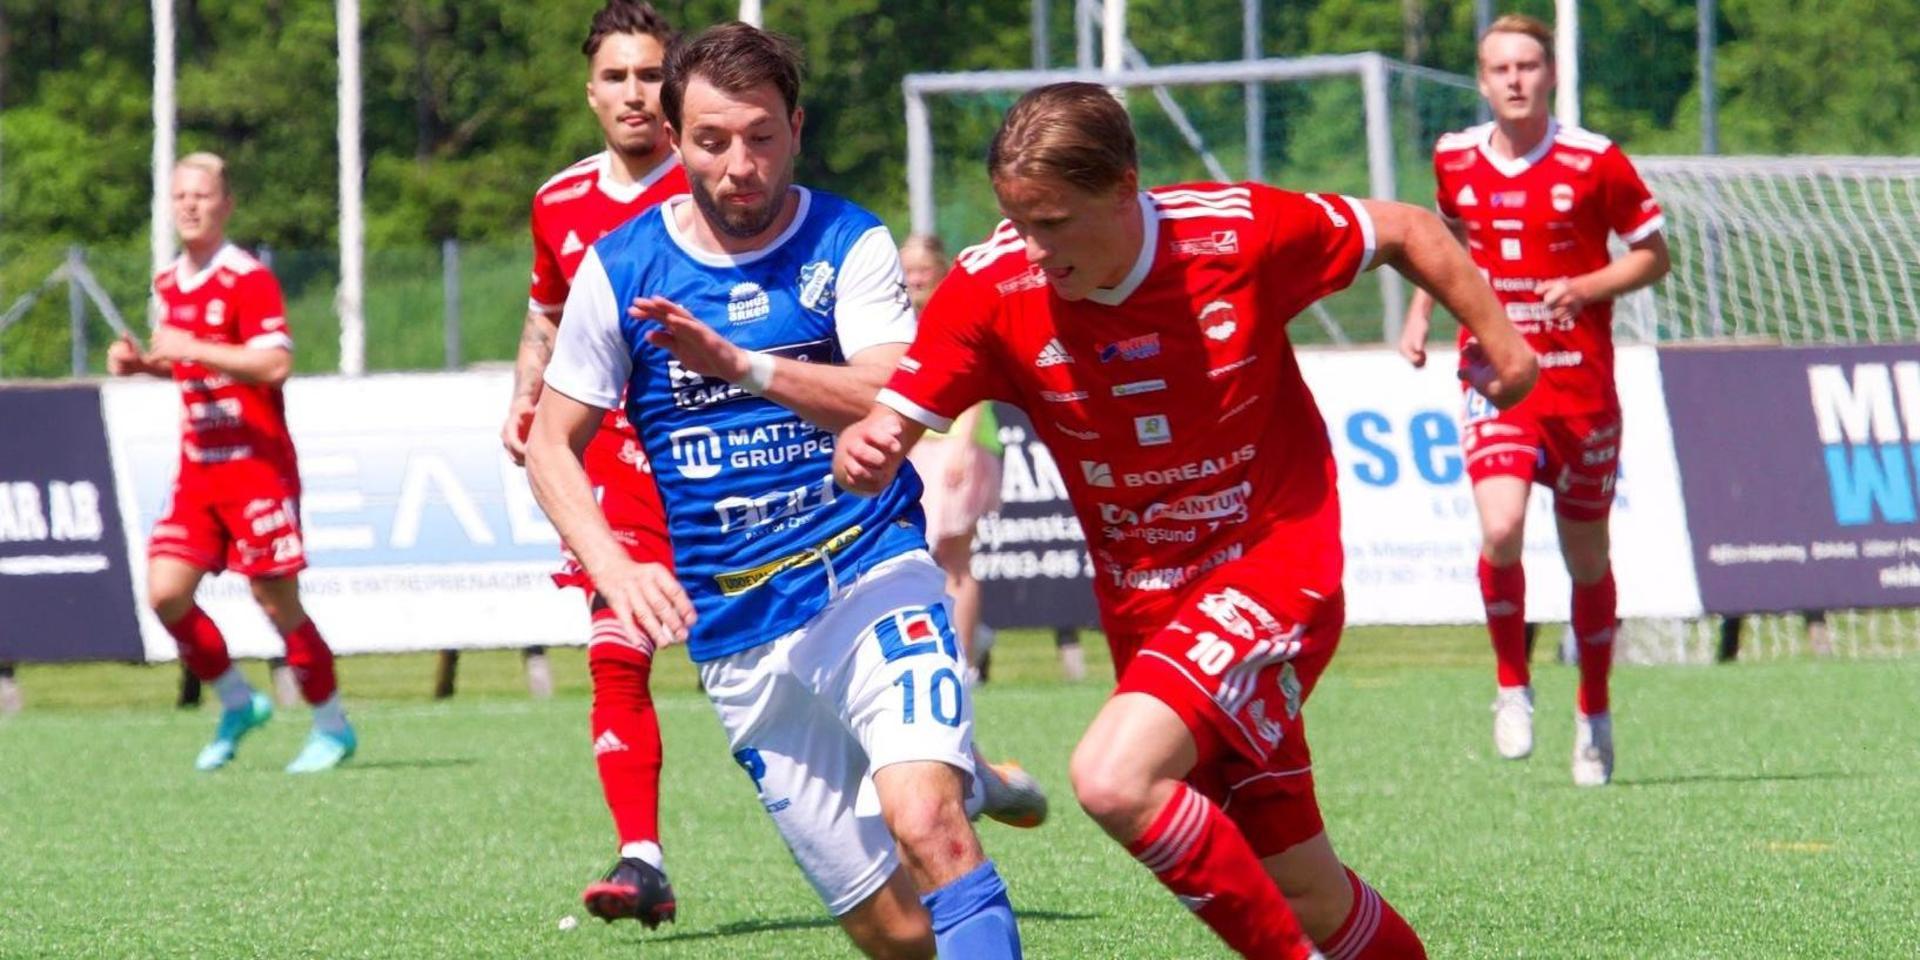 Linus Andersson i Sif avancerar framåt jagad av Imer Beqiri i IK Oddevold. Imer spelade förra säsongen i just Sif men värvades av IKO inför säsongen 2021.